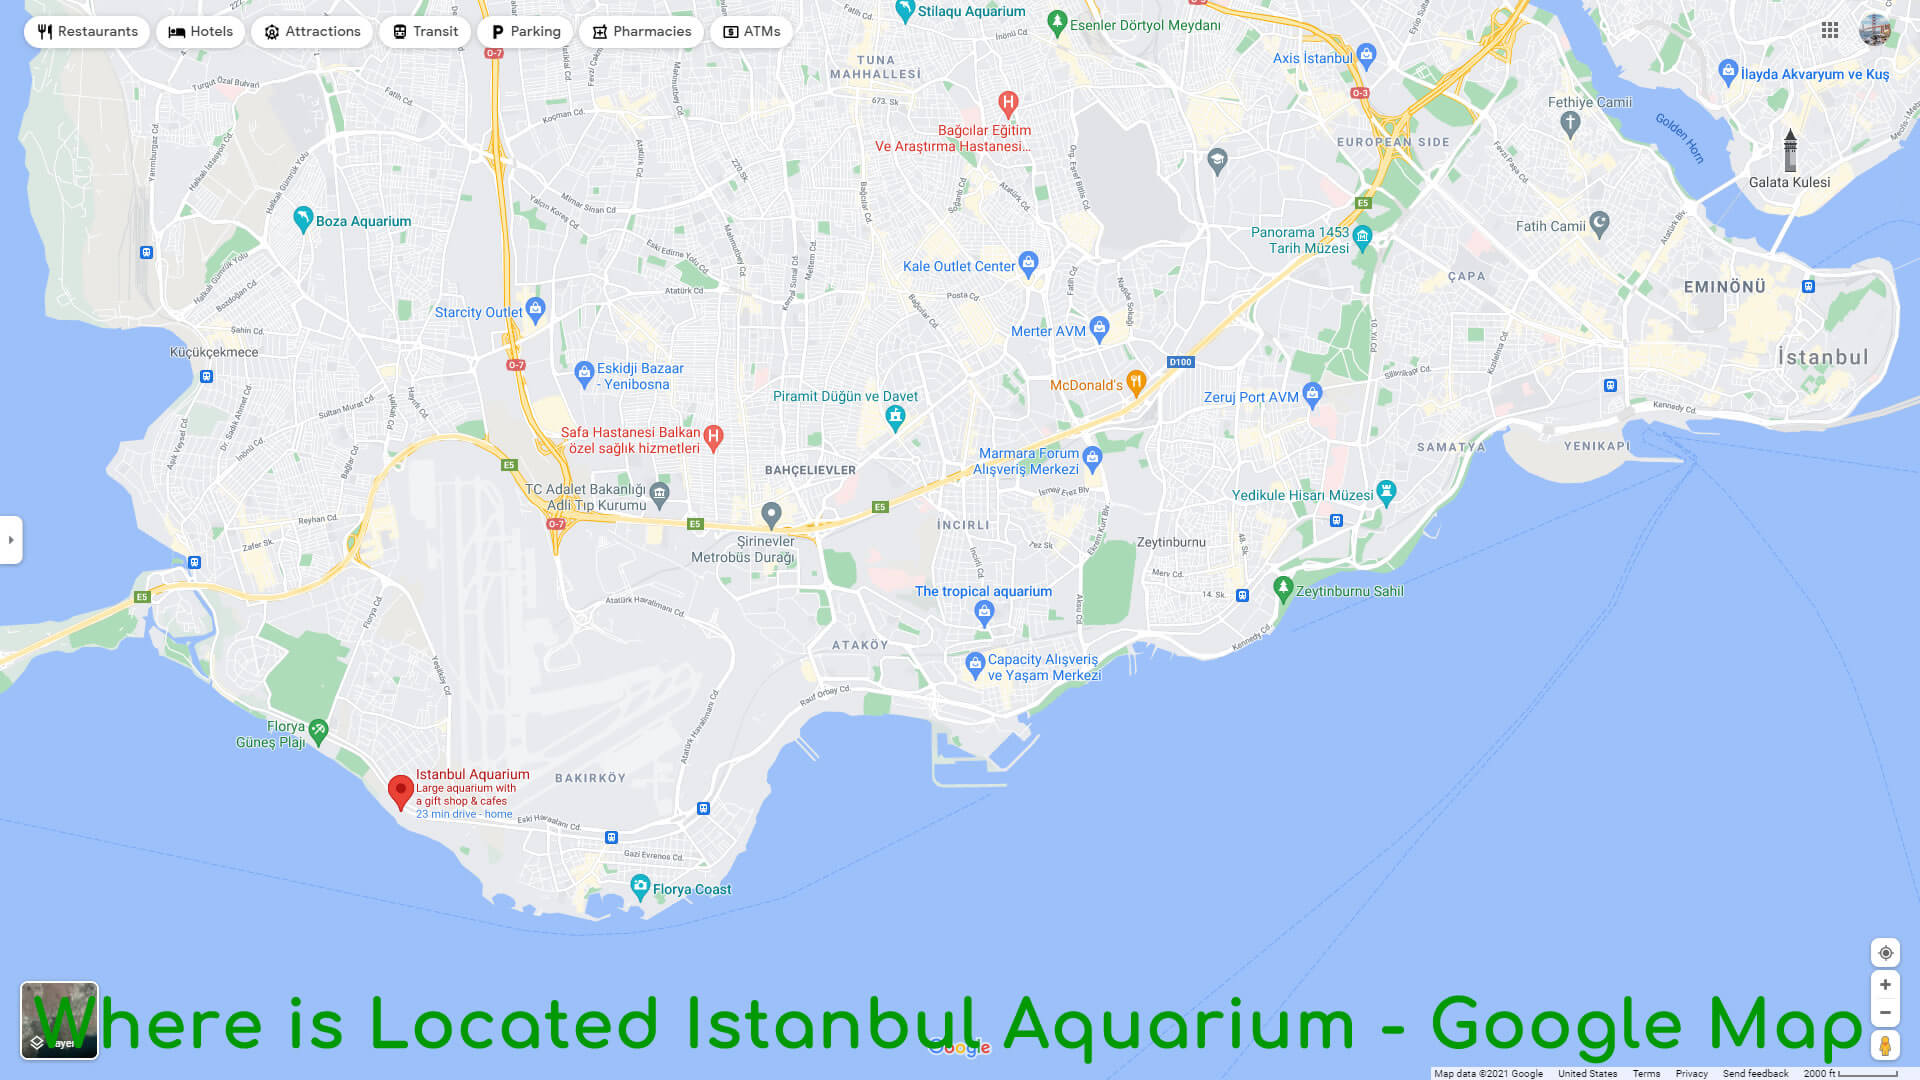 Where is Located Istanbul Aquarium - Google Map